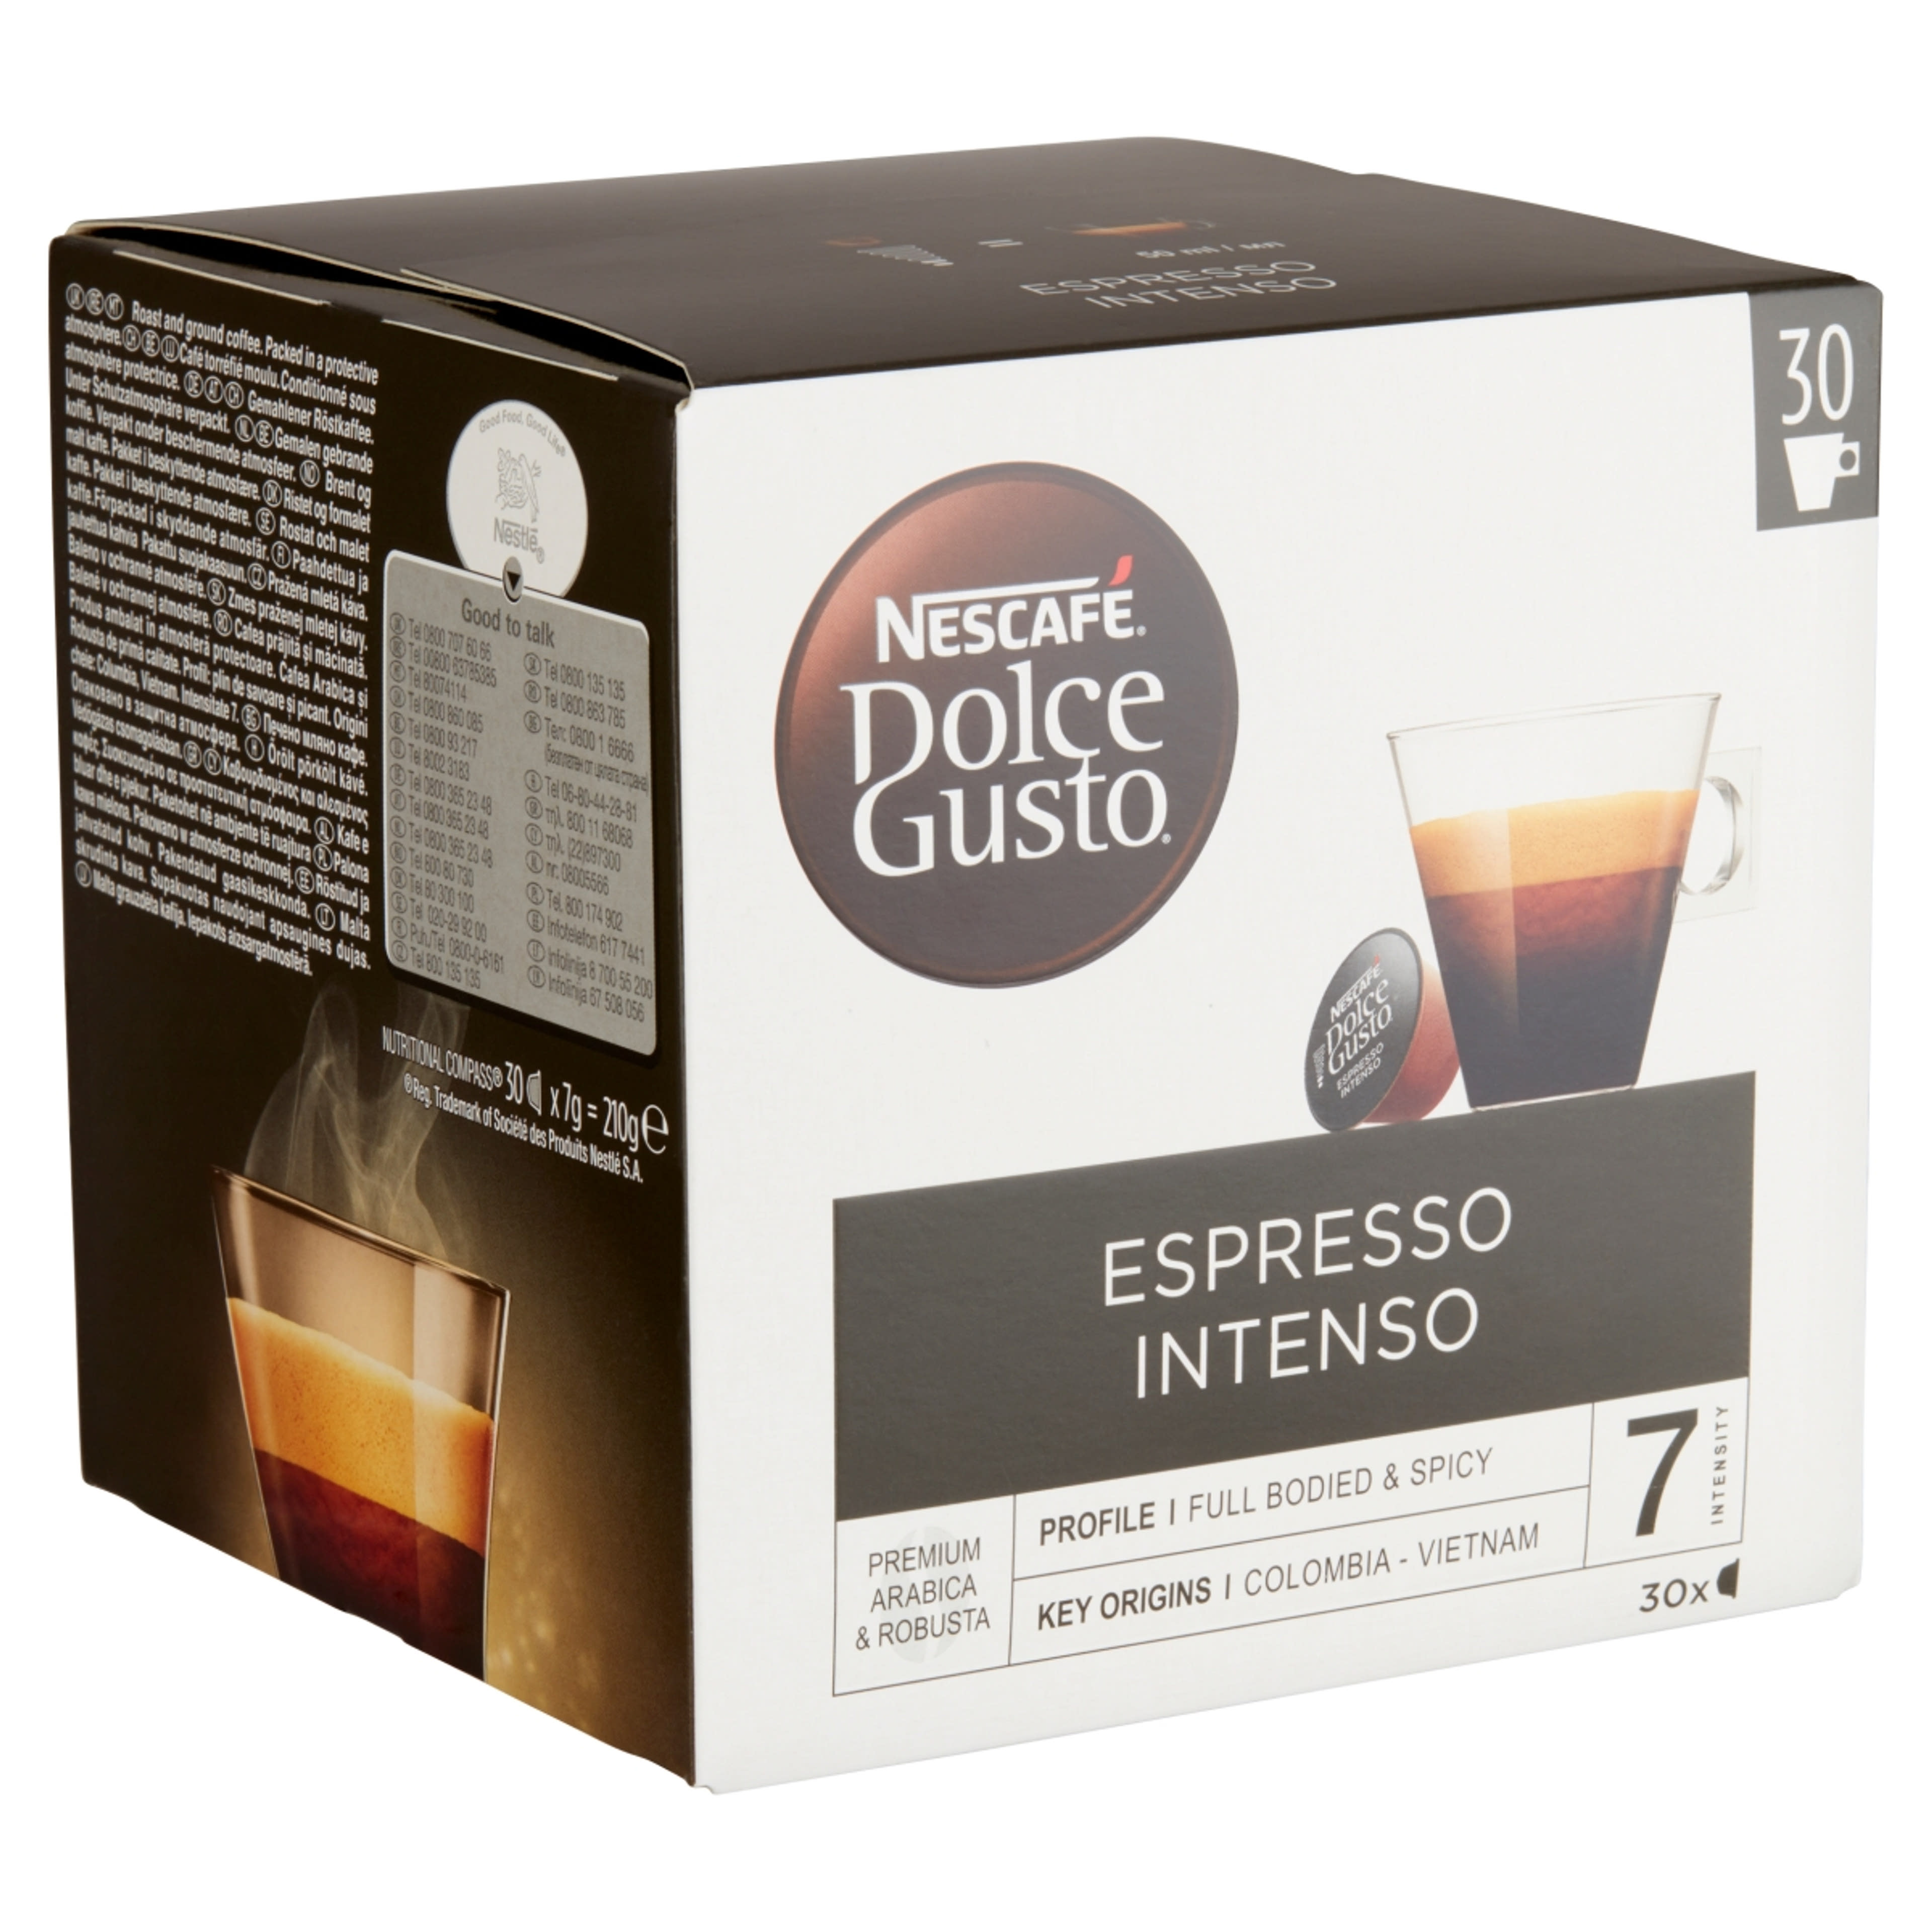 Nescafe Dolce Gusto espresso intenso 30 db kapszula - 210 g-2